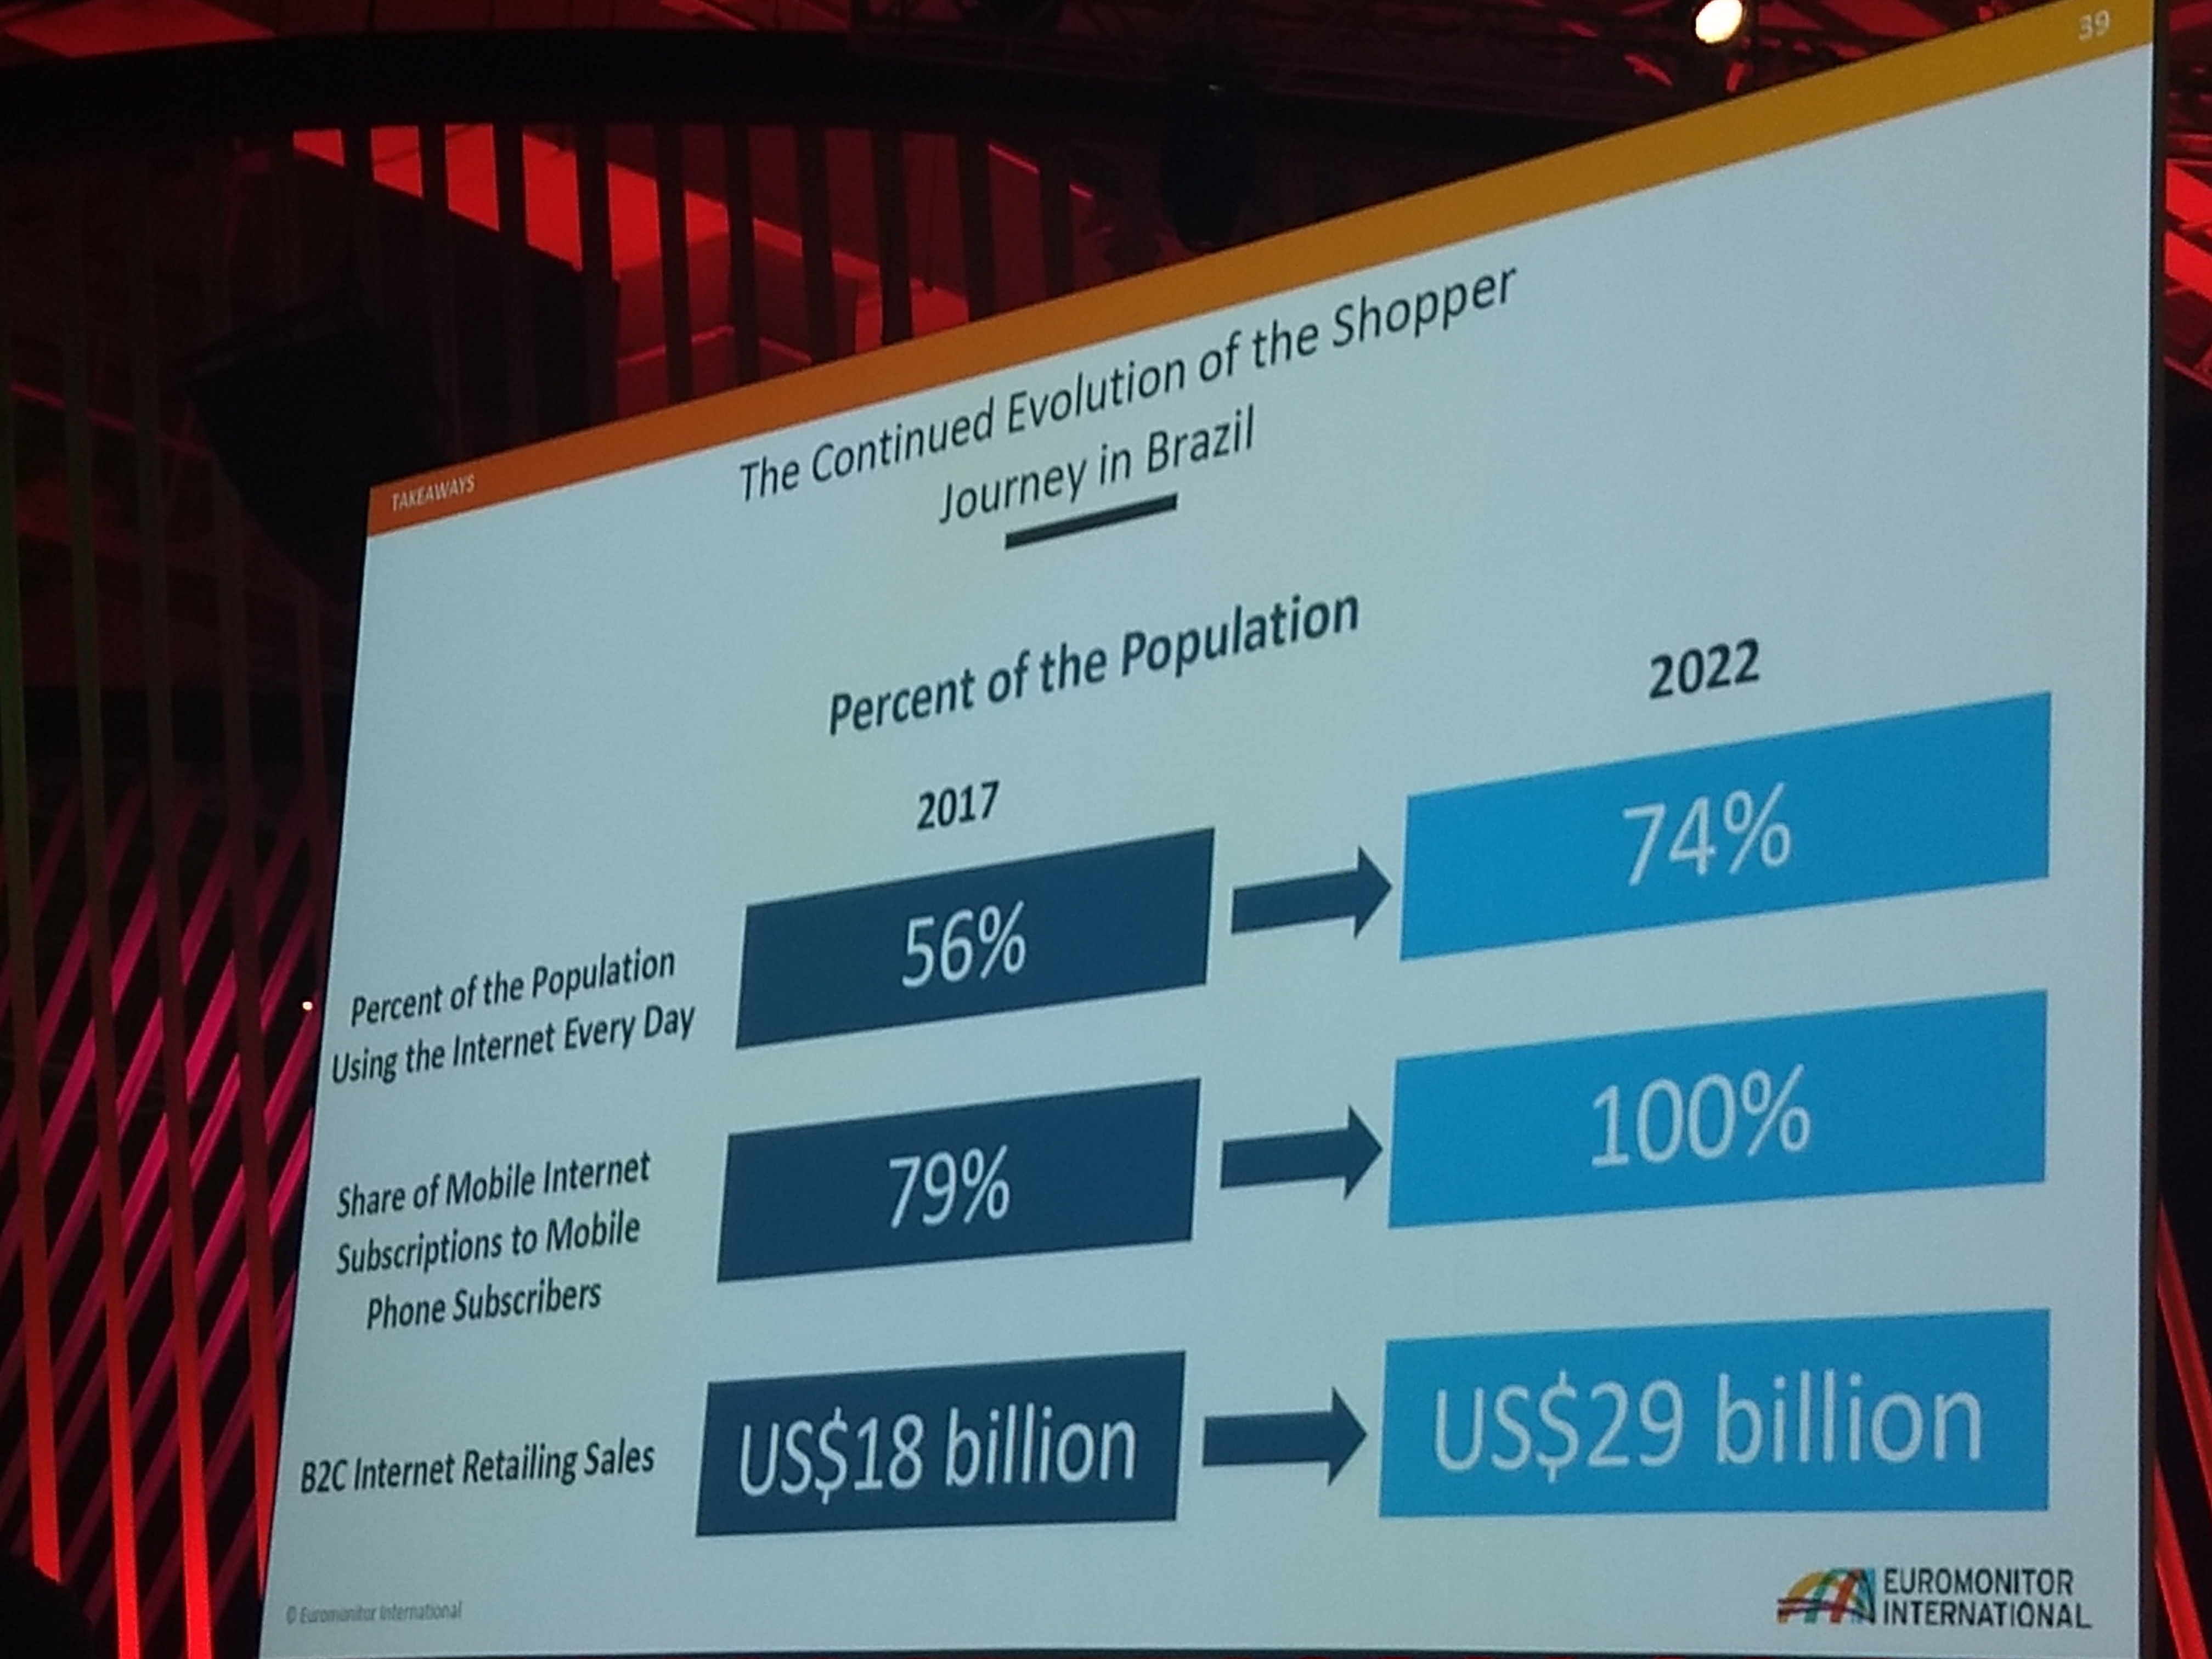 Foto que mostra a evolução da jornada de compra no Brasil com uma comparação dos anos de 2017 e 2022. 